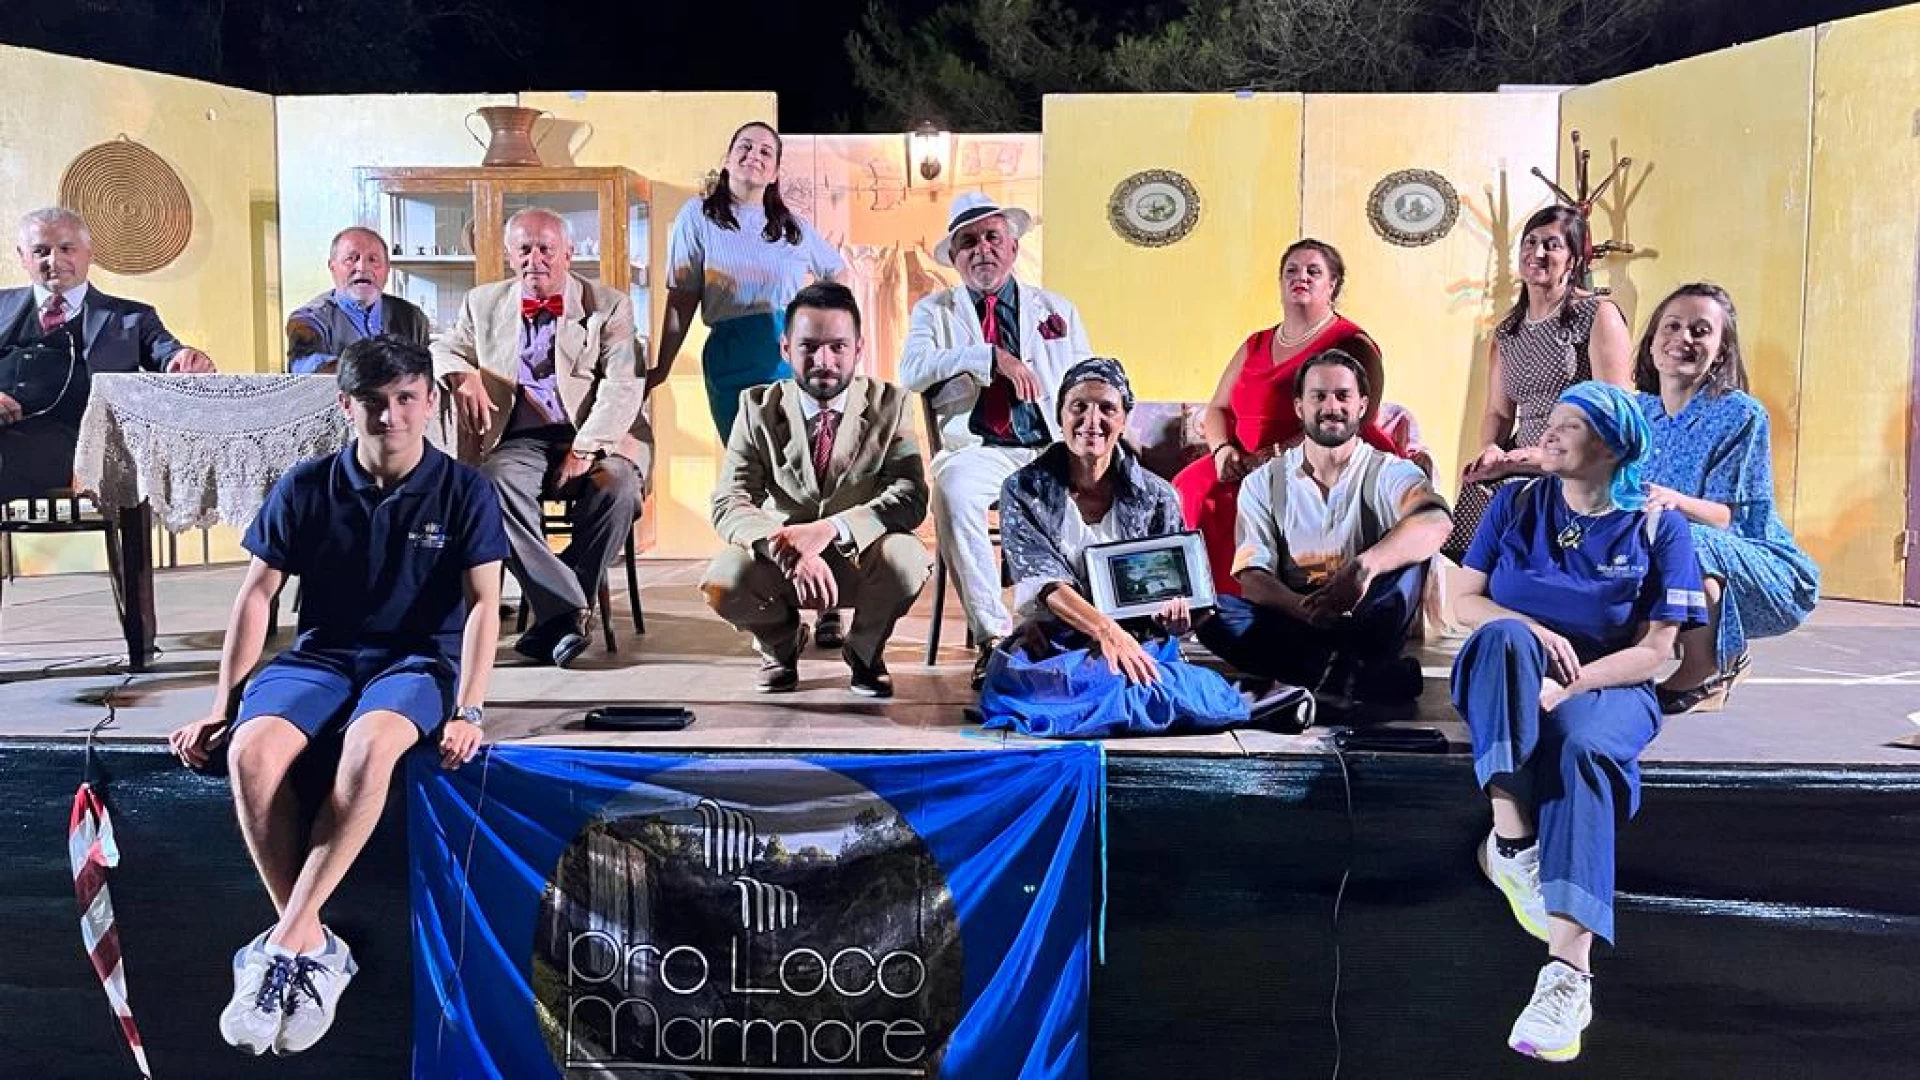 Teatro popolare, evento clou di fine estate a Santa Croce con "I soldi non fanno la felicità - specialmende quanne so' poche"